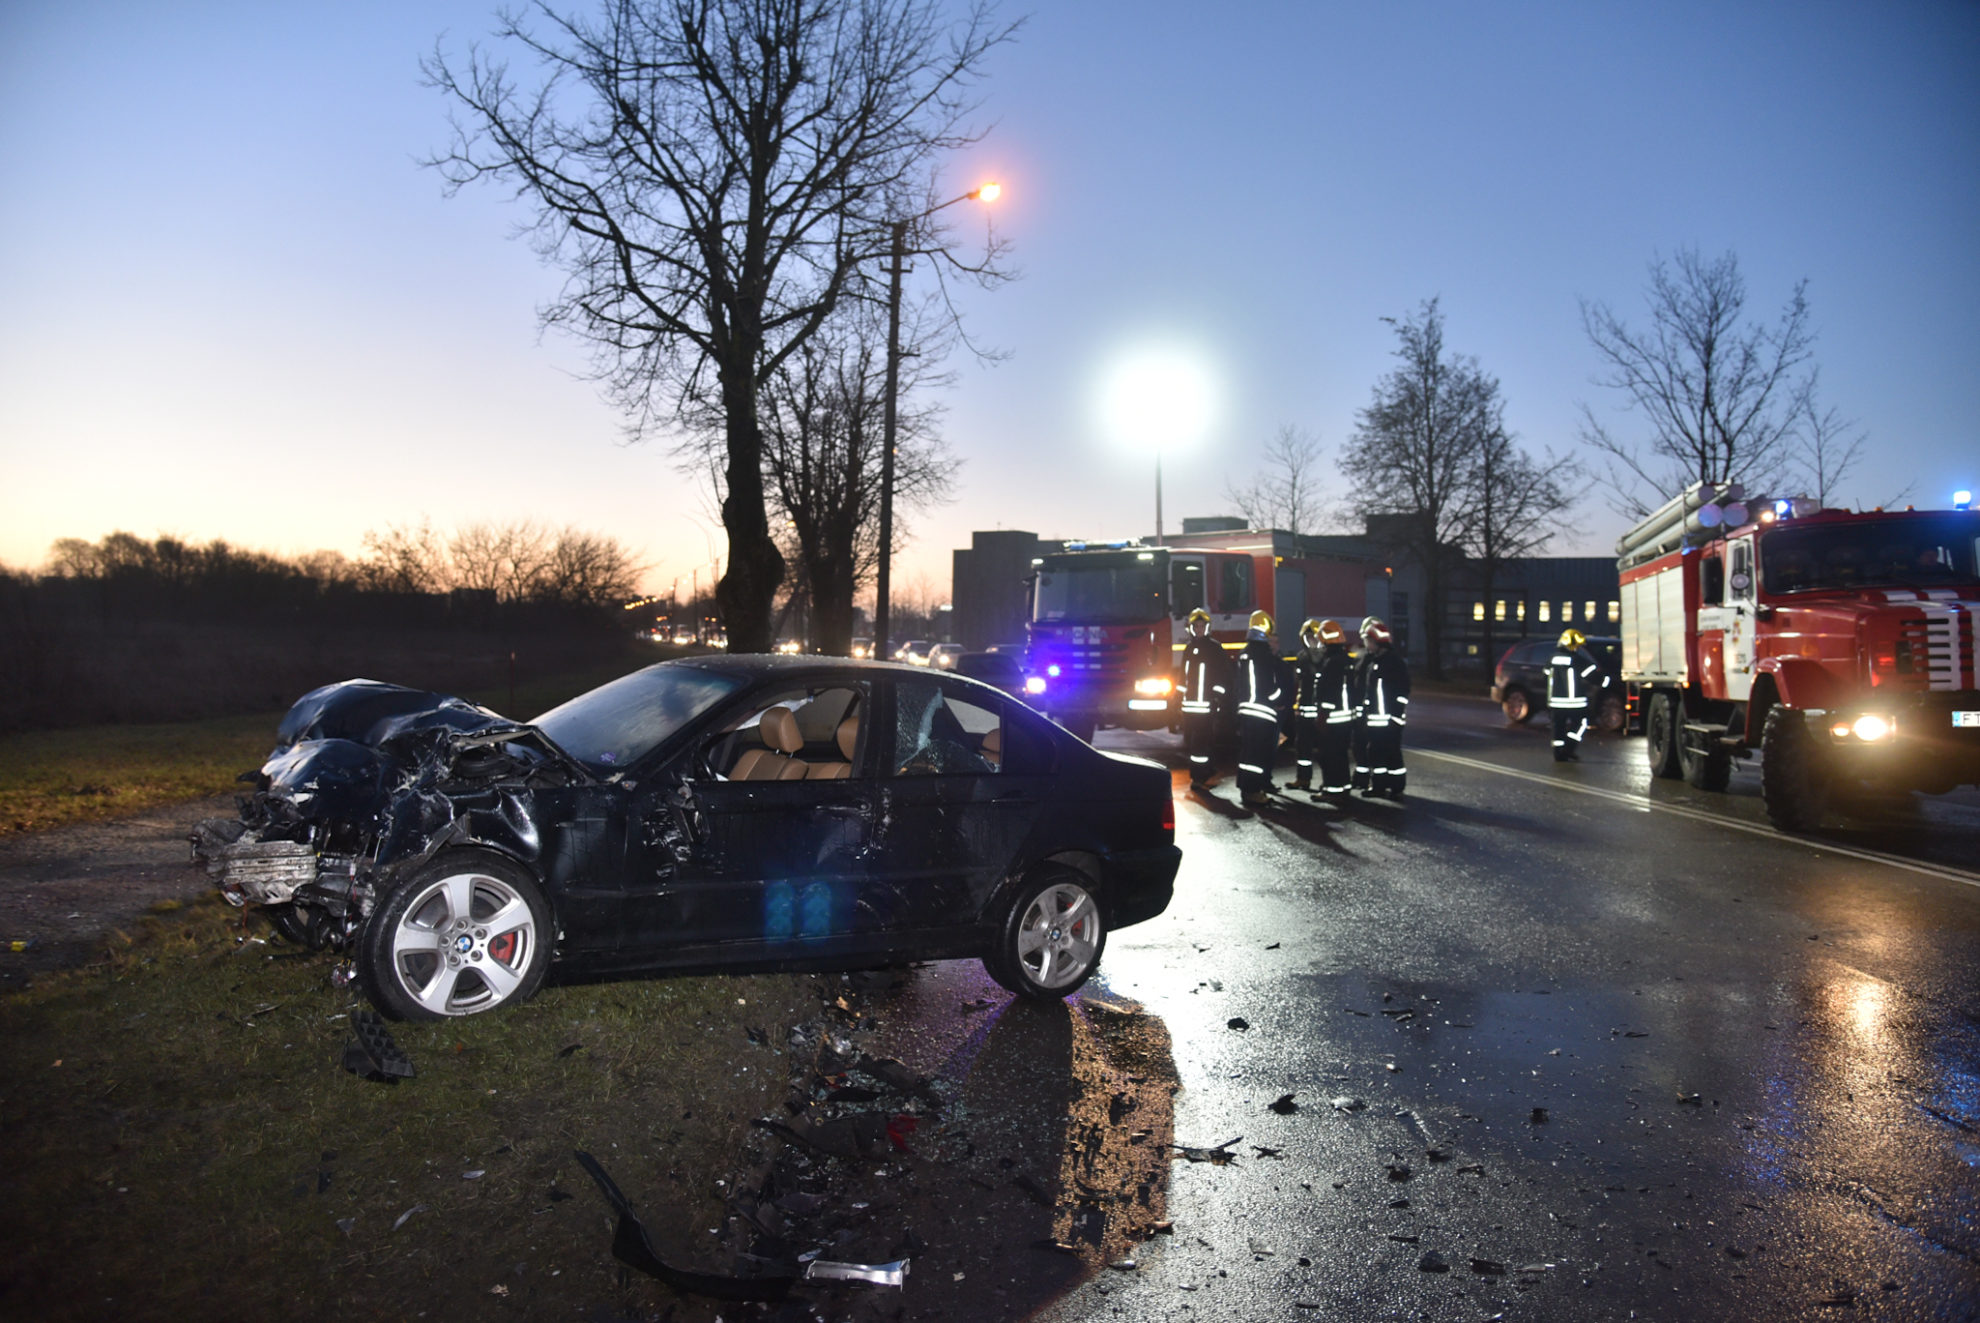 Ketvirtadienio rytą Panevėžyje, judrioje Pramonės gatvėje kaktomuša susidūrus dviem lengviesiems automobiliams, į ligoninę išvežti penki žmonės.